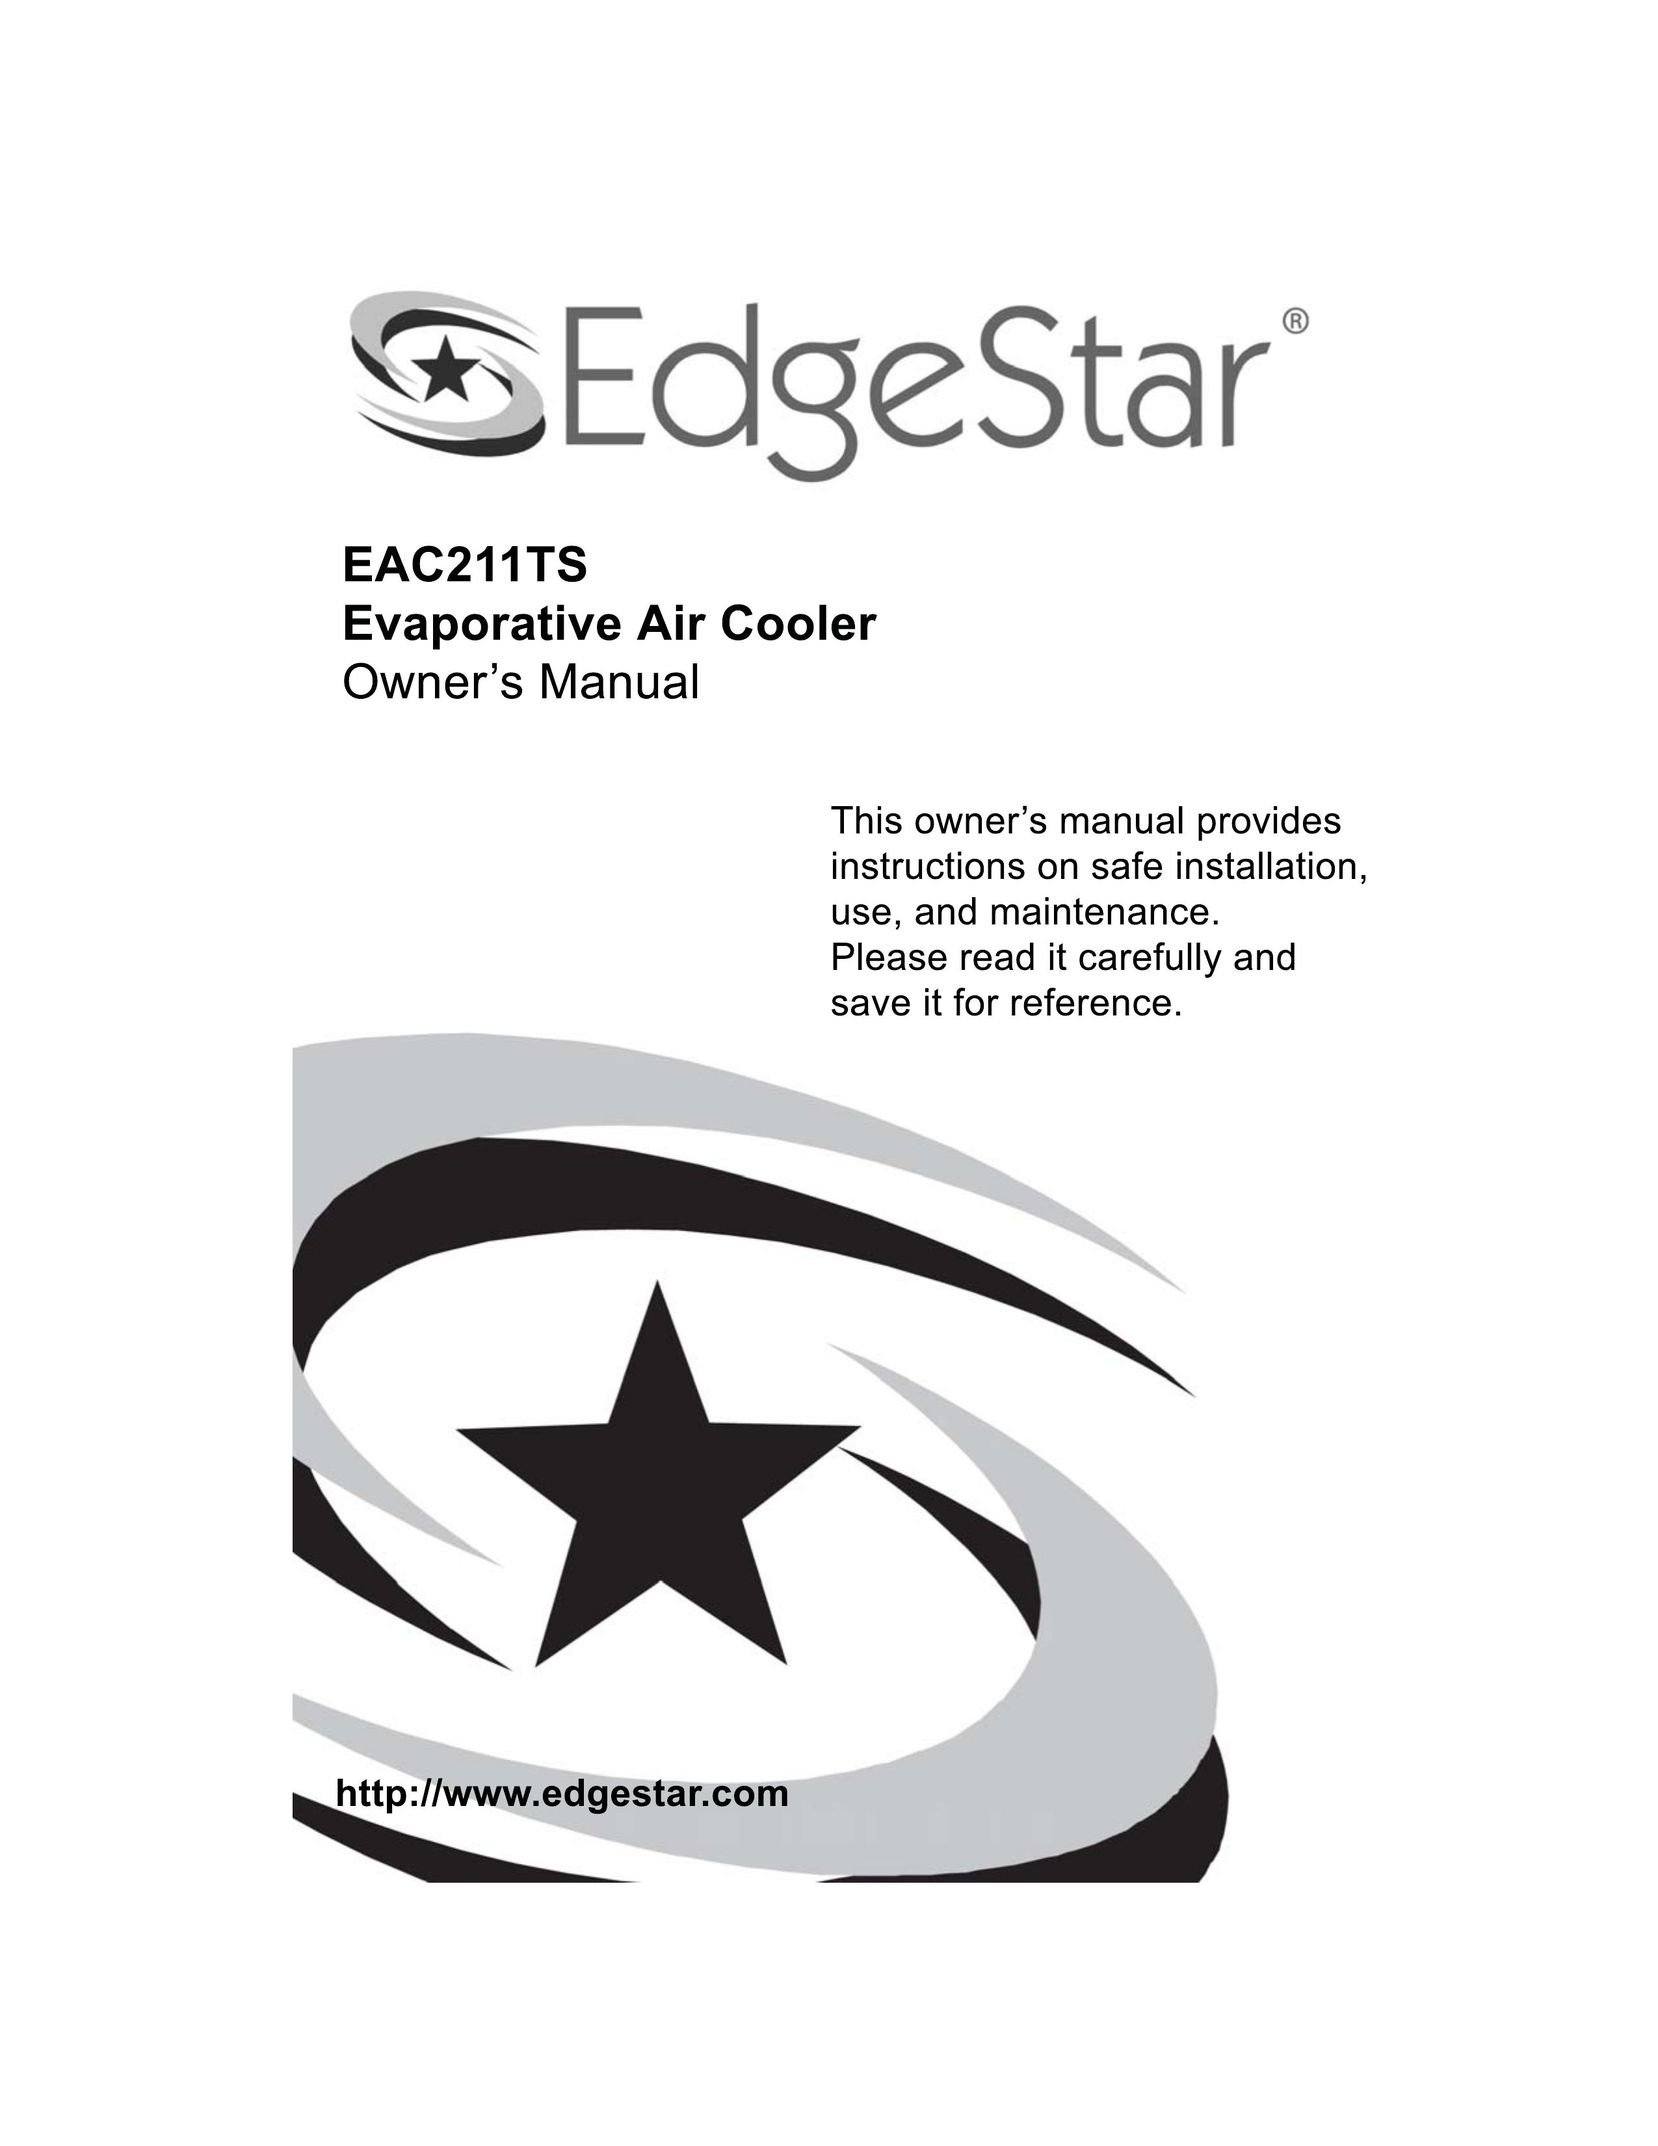 EdgeStar EAC211TS Fan User Manual